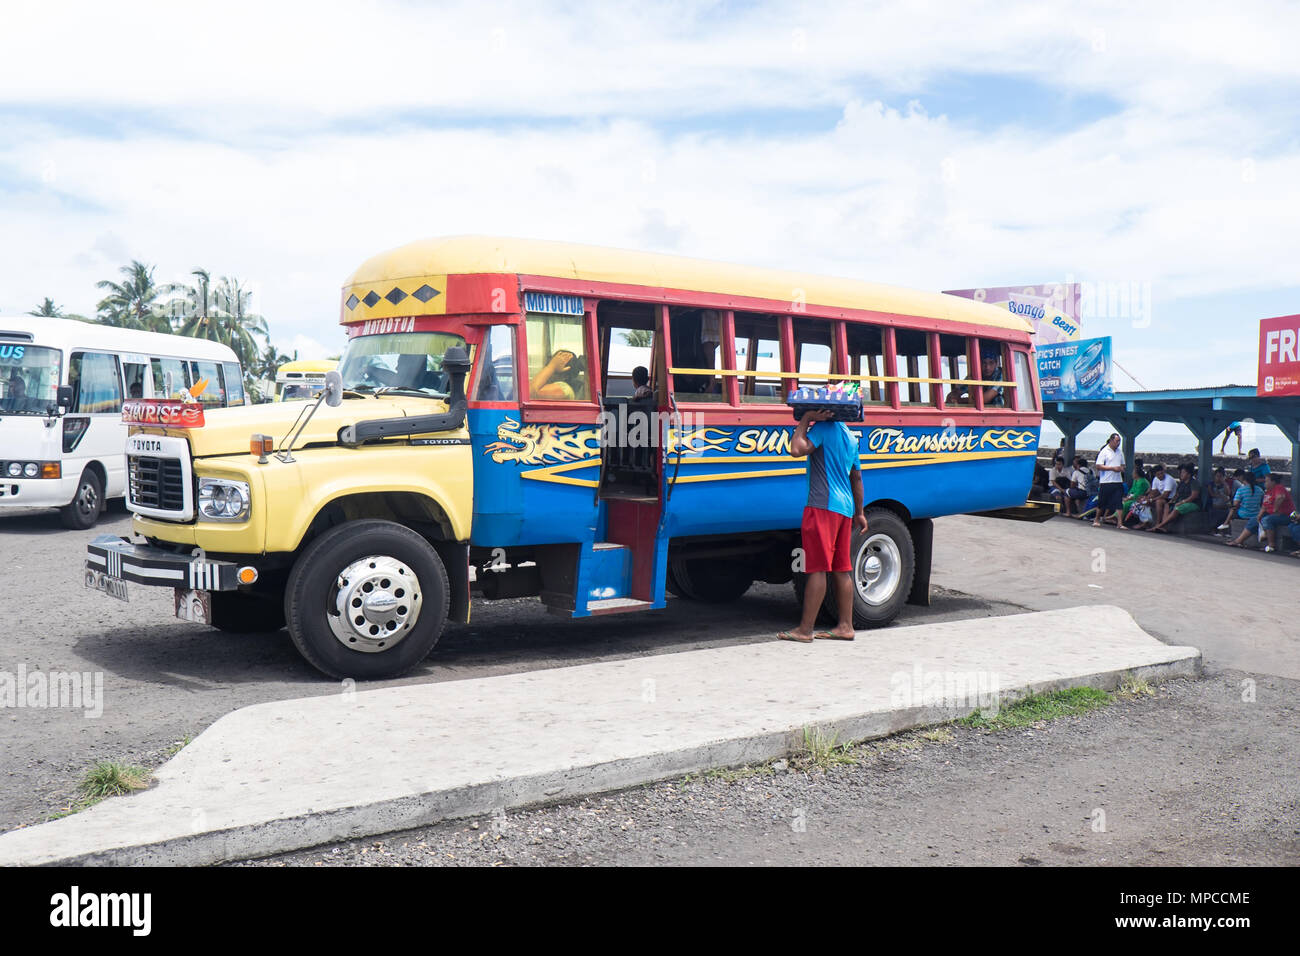 Apia, Samoa - 30 Ottobre 2017: Vendor con spuntini avvicinando un vintage Toyota autobus a Apia stazione degli autobus nell'isola di Upolu Foto Stock